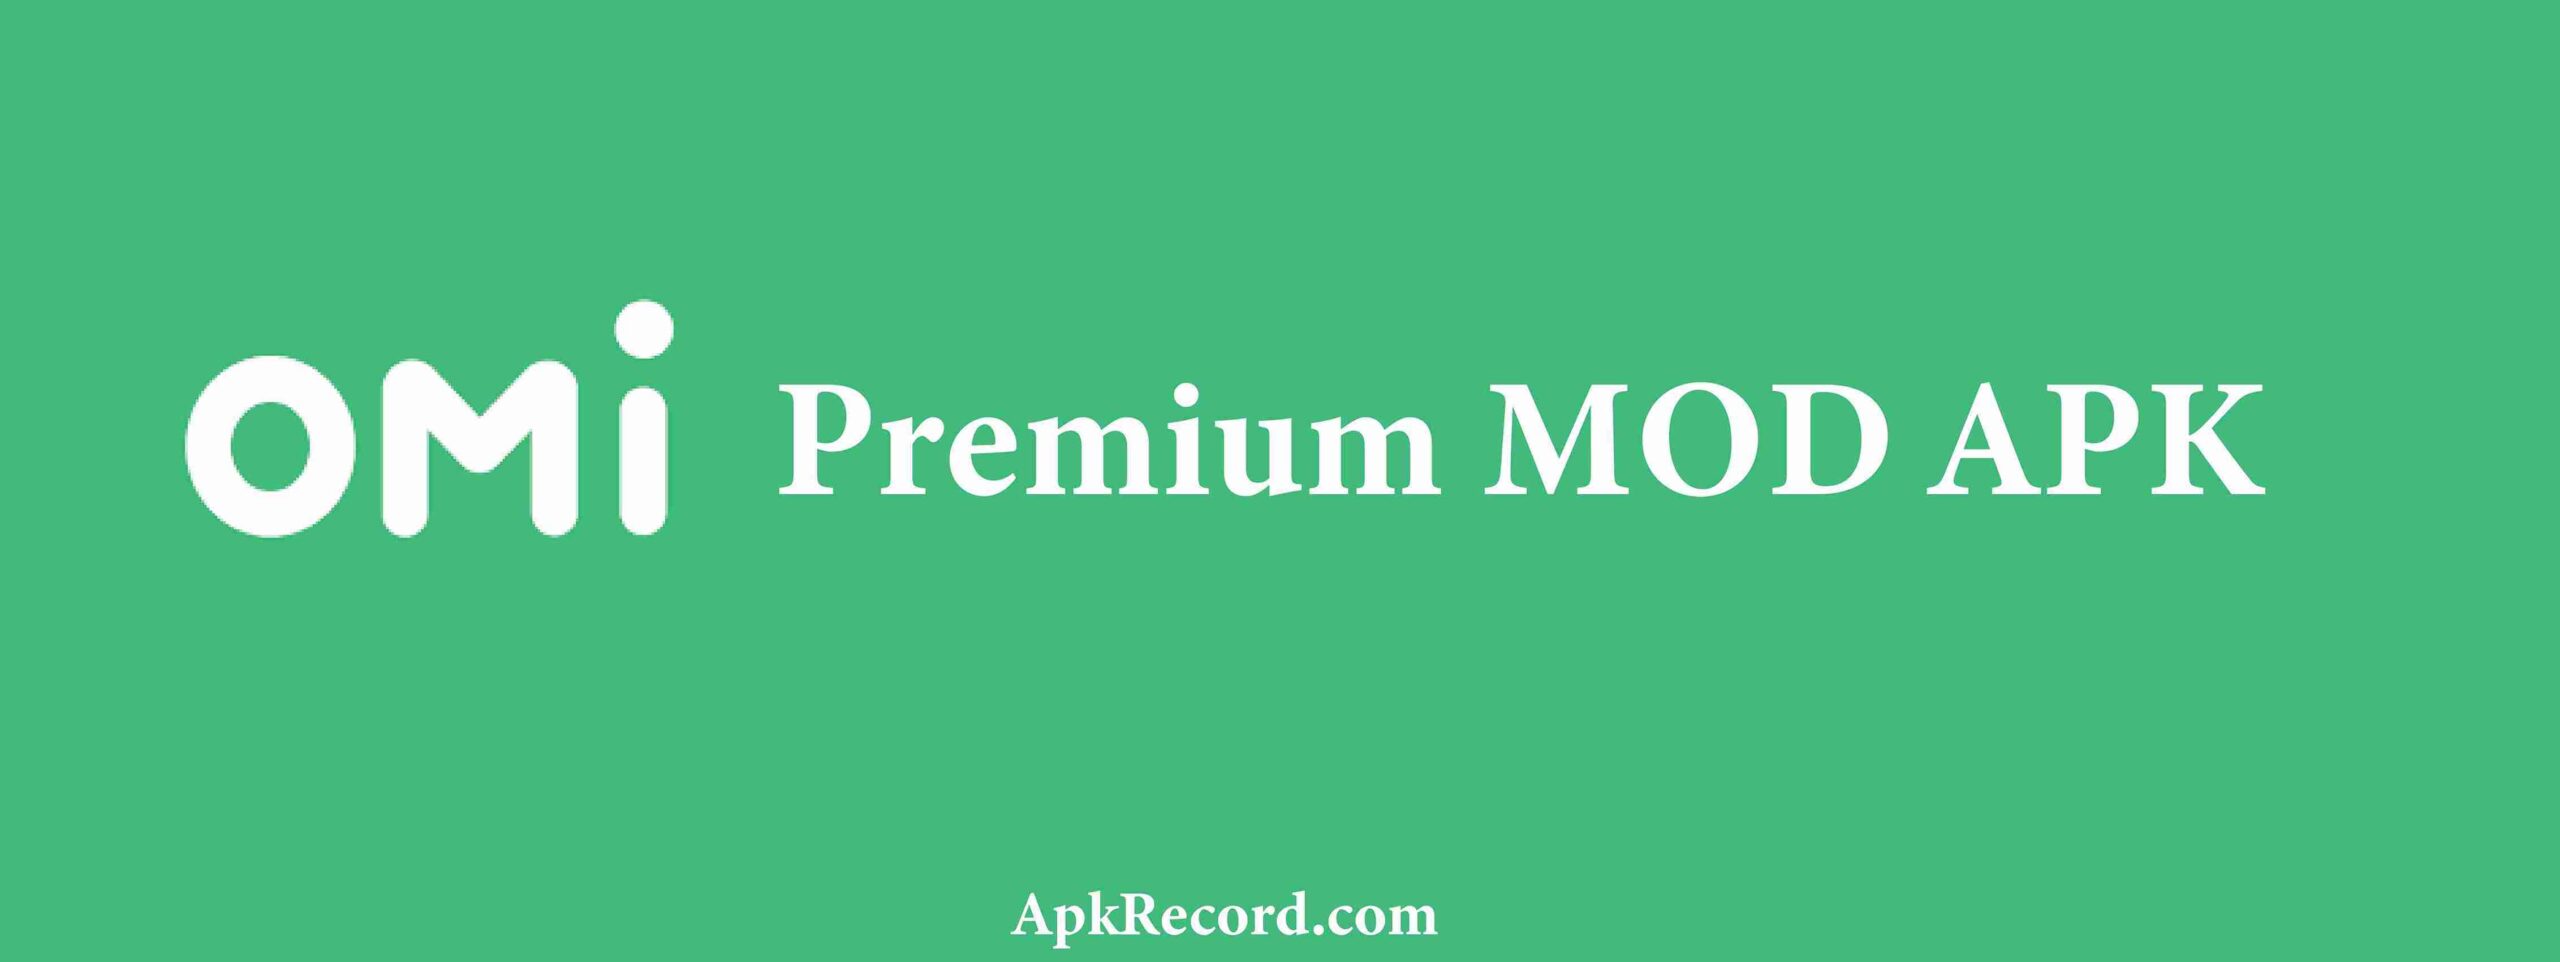 Omi Premium MOD APK V6.63.0